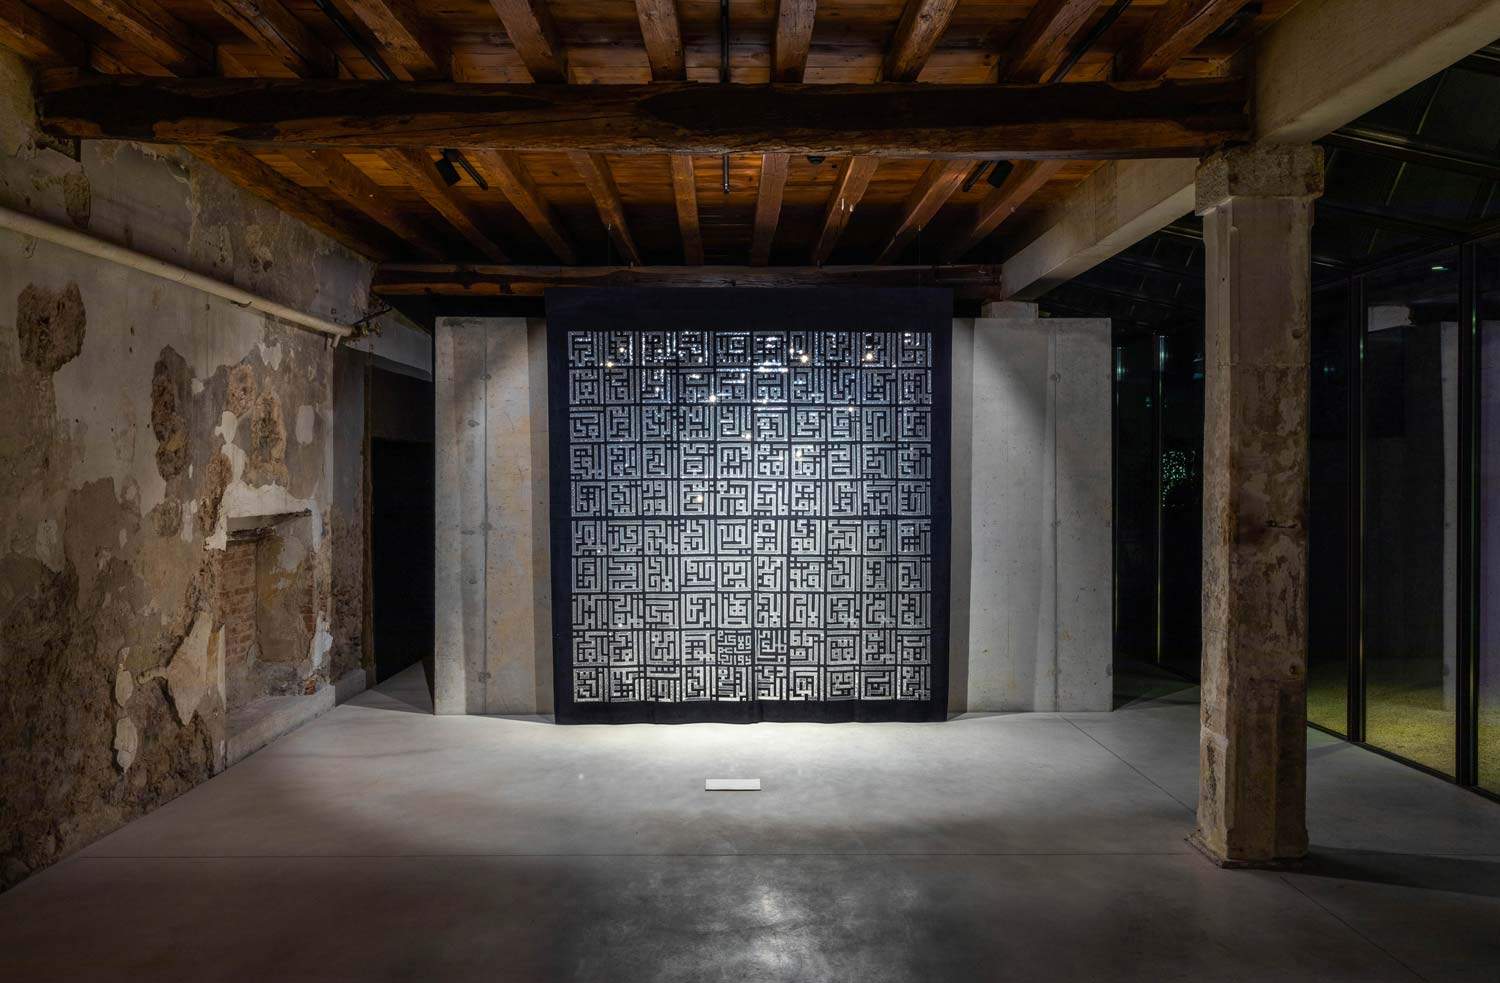 Vicenza, in the Atipografia space, artist Stefano Mario Zatti gives... shape to words